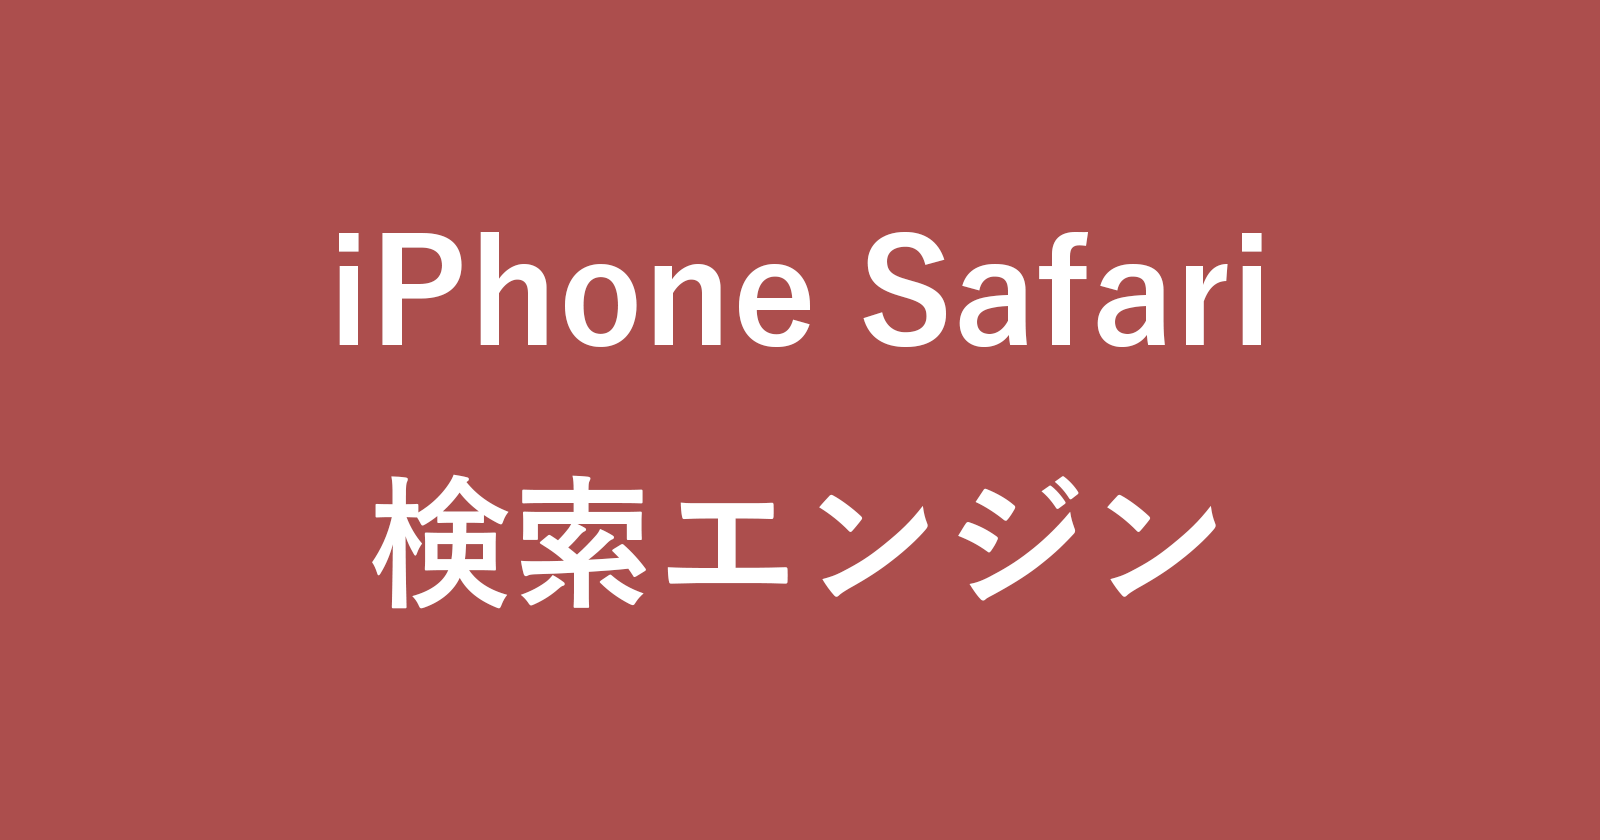 iphone safari search engine